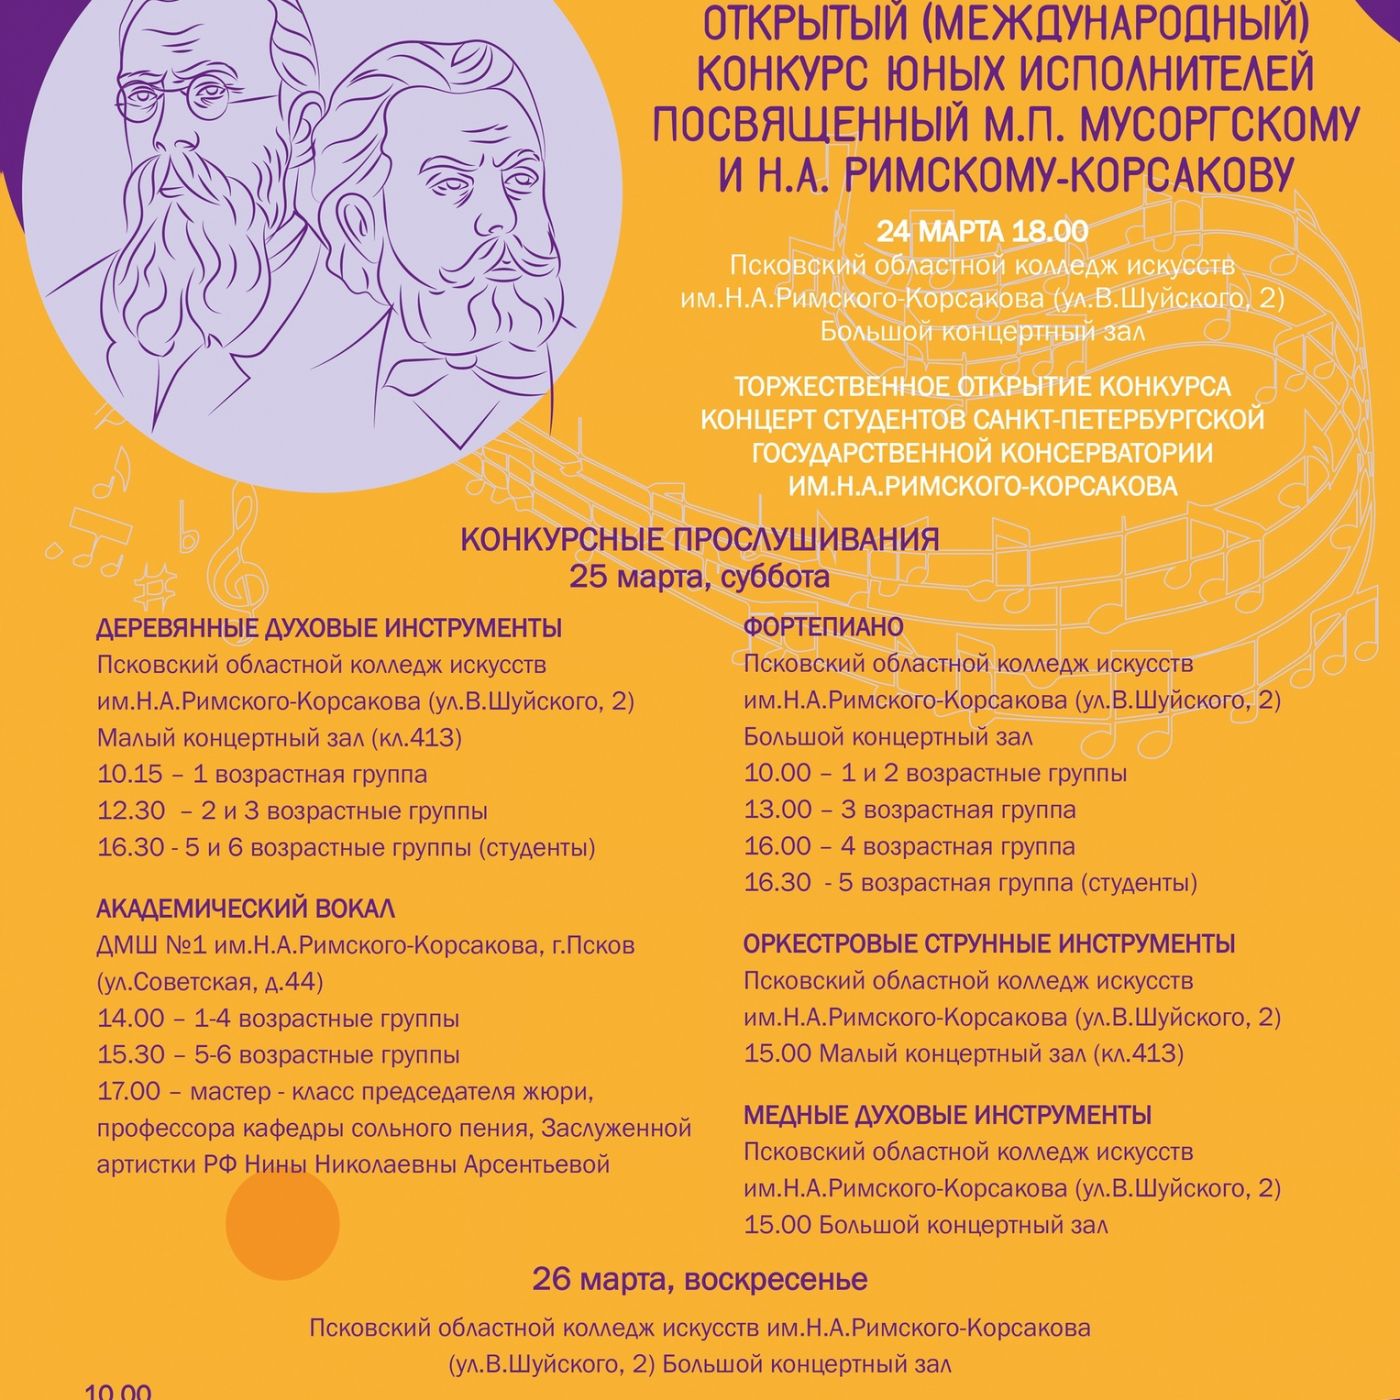 Церемония открытия IX Международного конкурса, посвящённого М.П. Мусоргскому и Н.А. Римскому-Корсакову, пройдёт в Пскове 24 марта